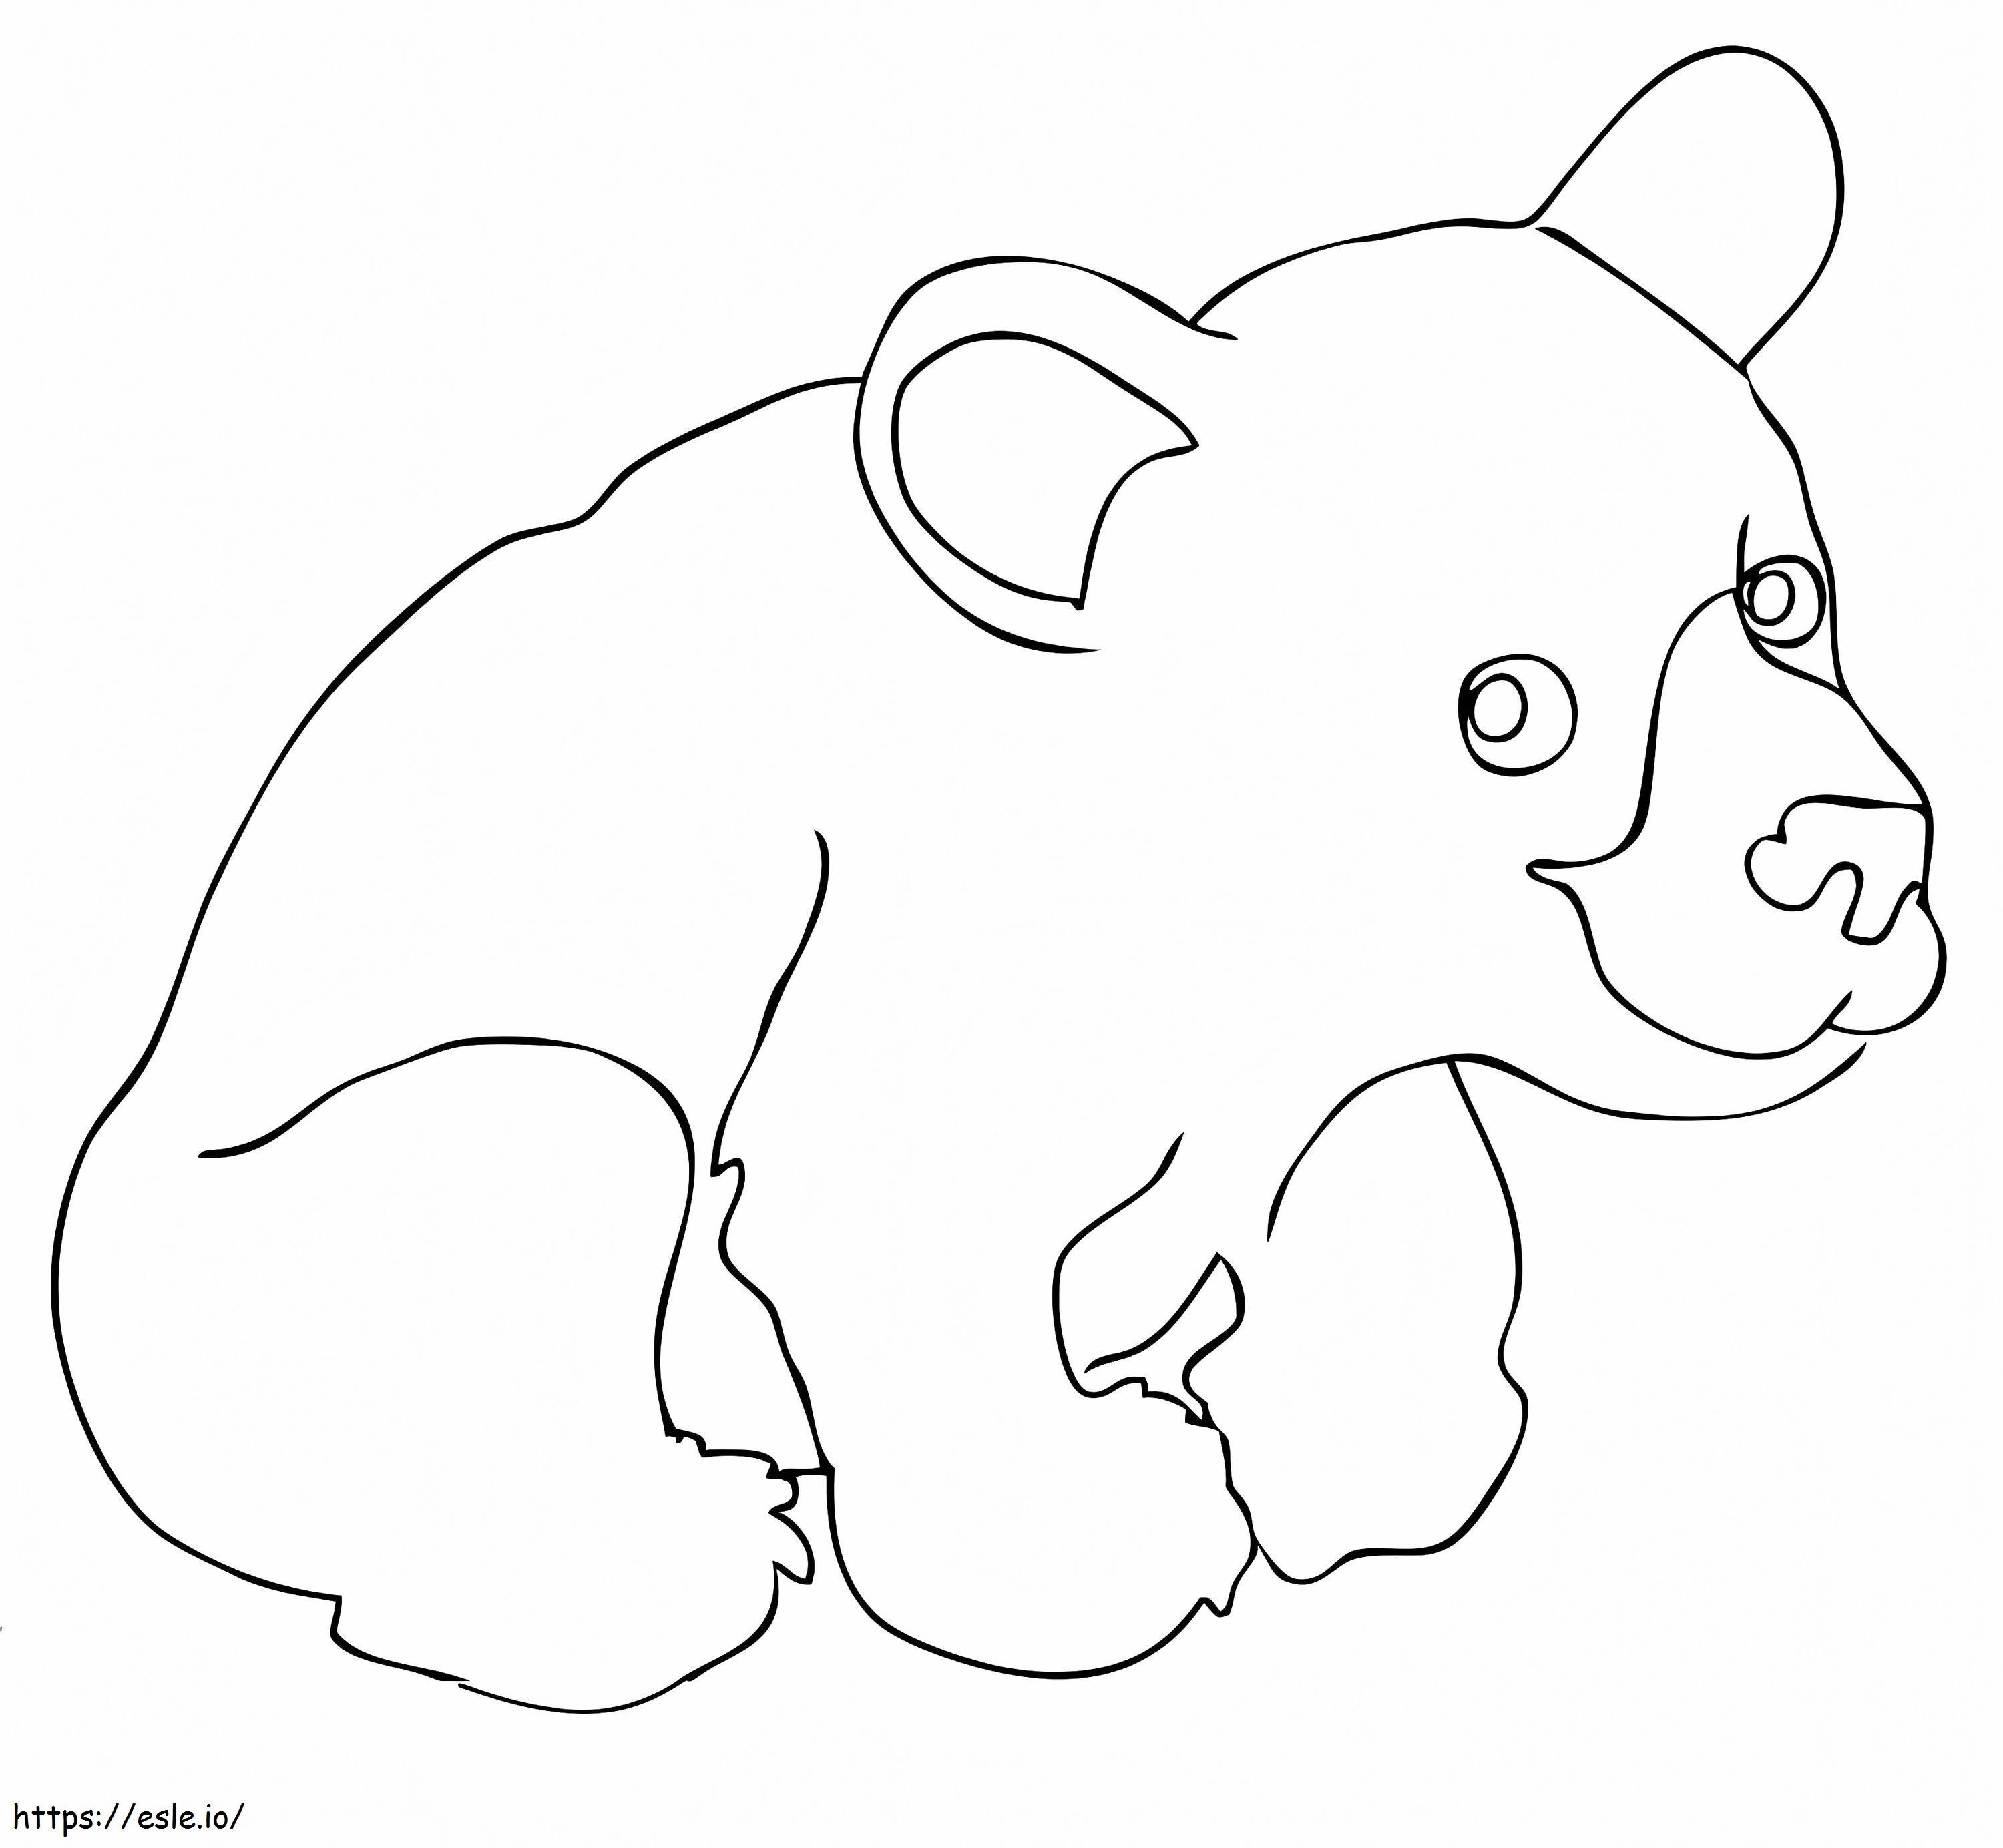 Anak Beruang Hitam yang lucu Gambar Mewarnai